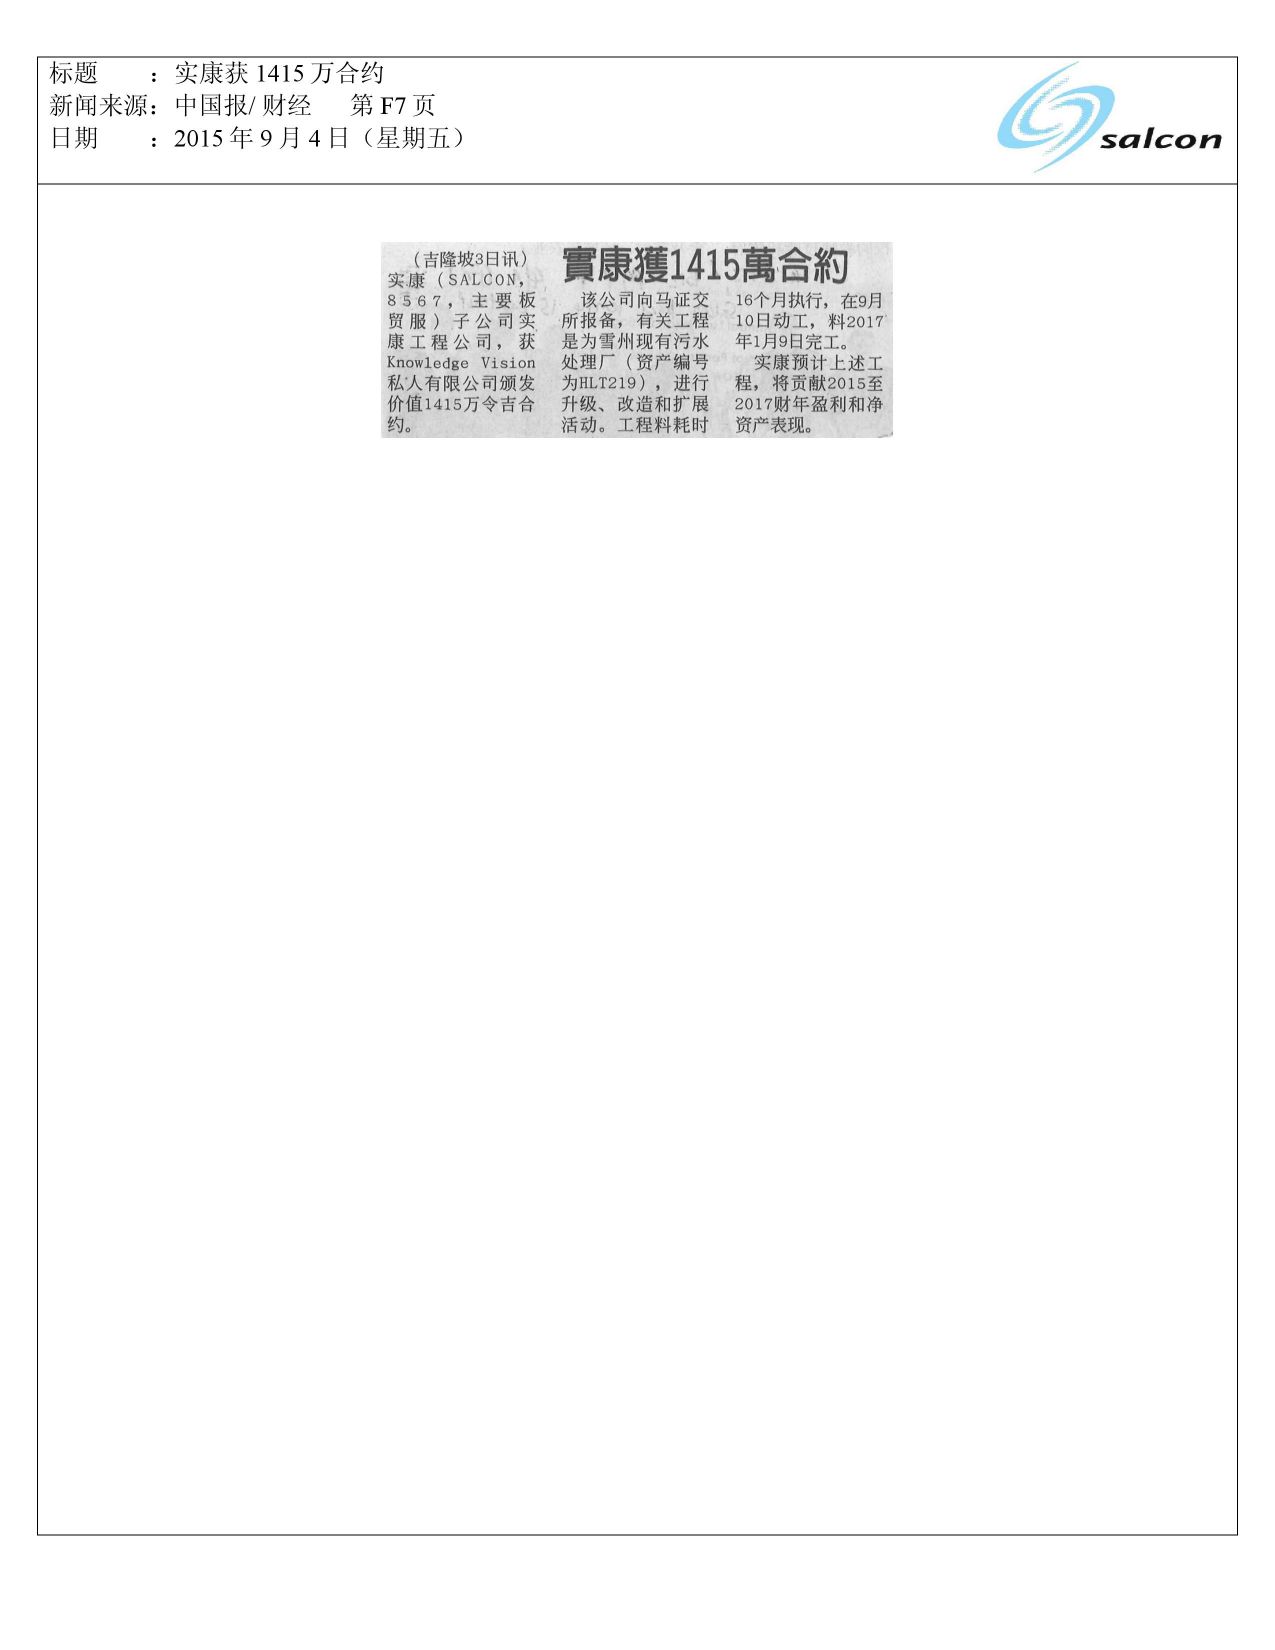 中国报/ 财经 第F7页